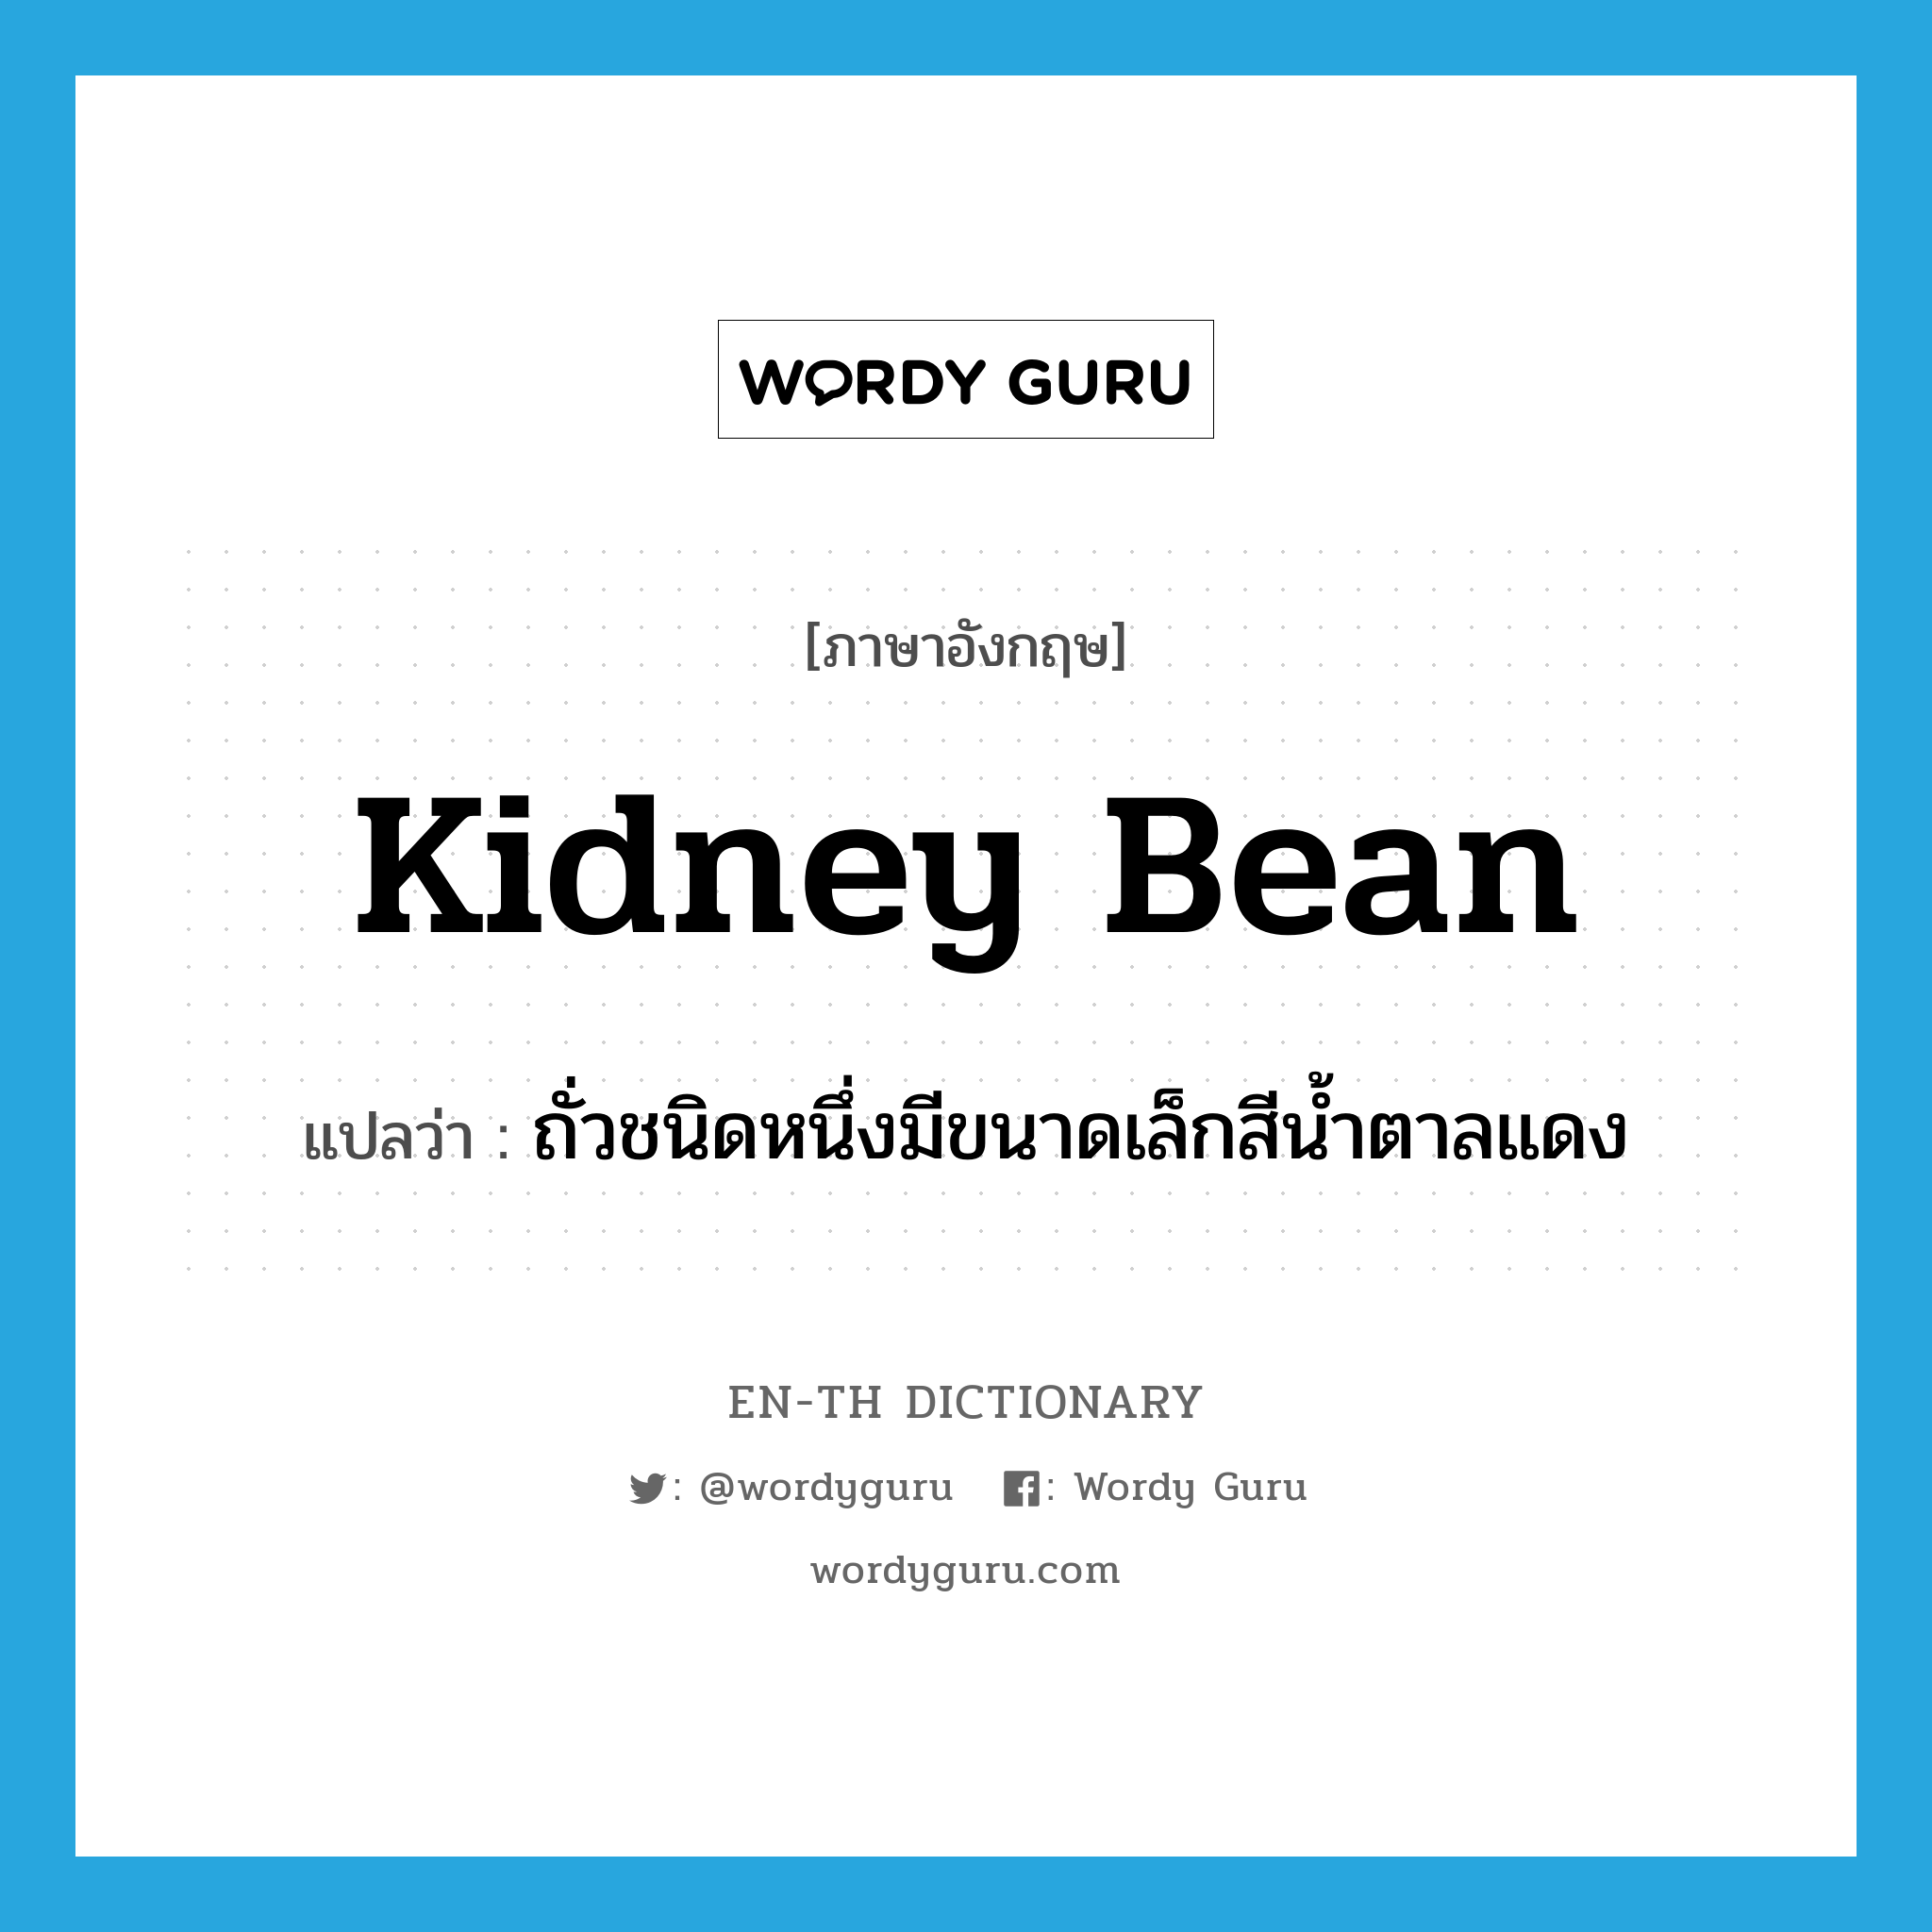 kidney bean แปลว่า?, คำศัพท์ภาษาอังกฤษ kidney bean แปลว่า ถั่วชนิดหนึ่งมีขนาดเล็กสีน้ำตาลแดง ประเภท N หมวด N